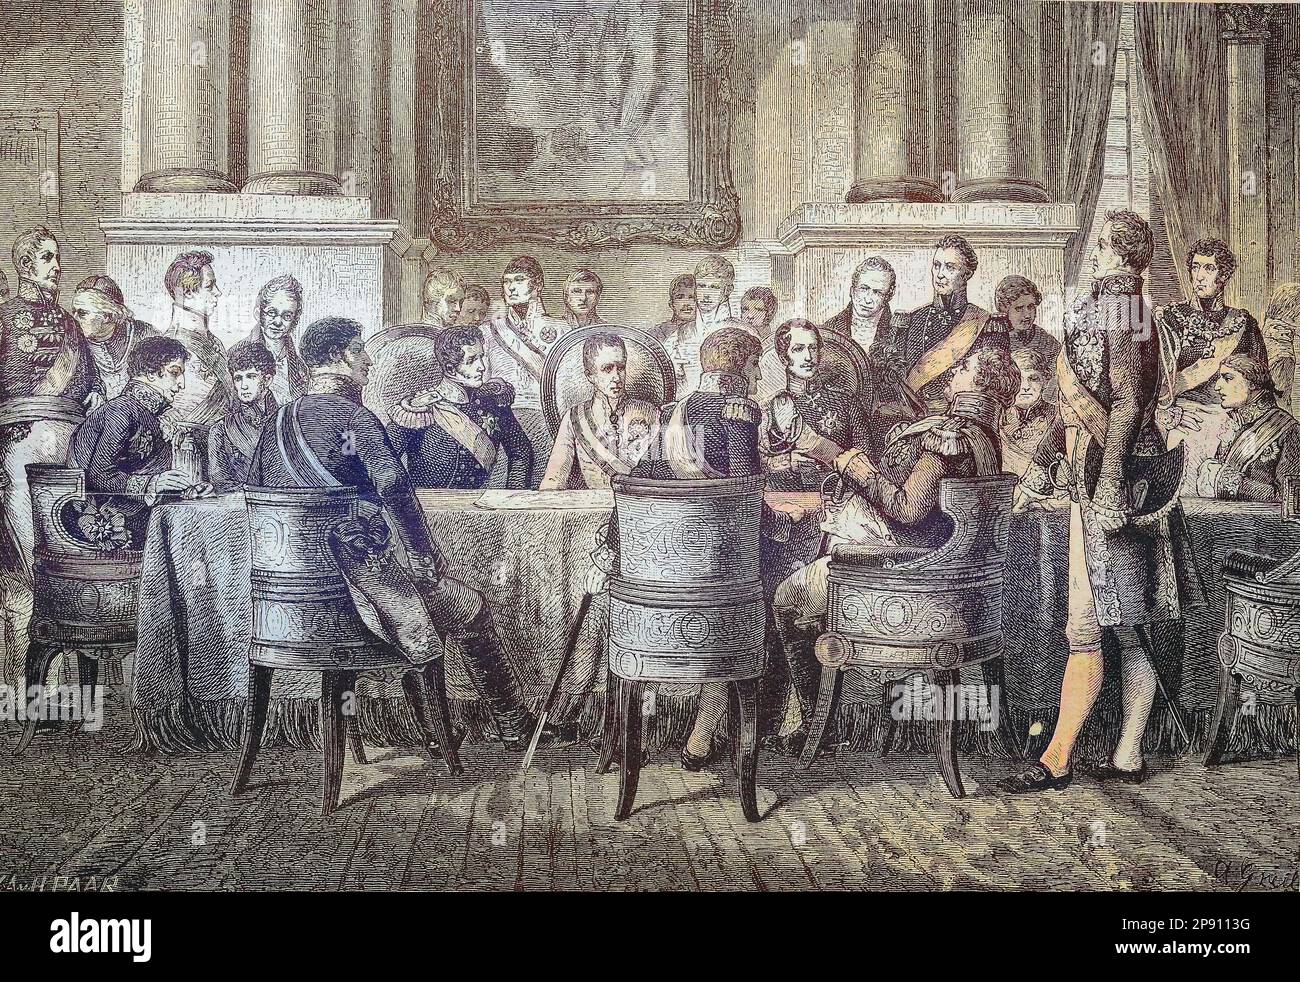 Der Wiener Kongreß im Jahre 1815, Oesterreich, Historisch, digital restaurierte Reproduktion von einer Vorlage aus dem 19. Jahrhundert Stock Photo